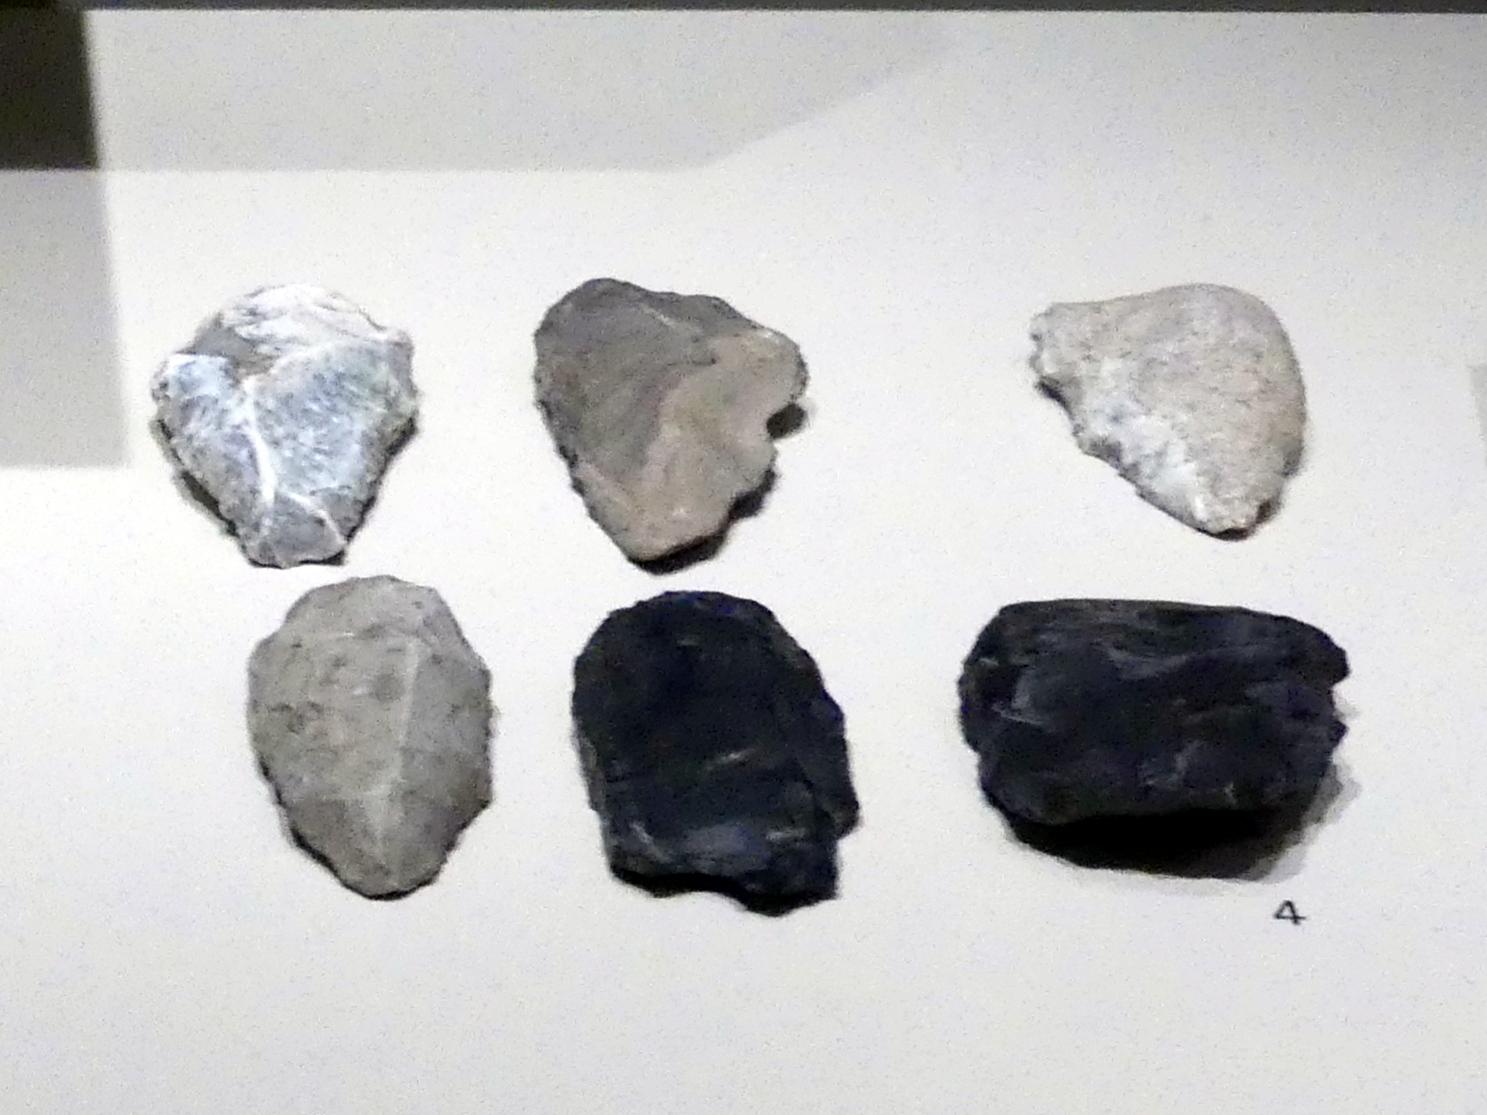 Kratzer, Mittelpaläolithikum, 200000 - 31000 v. Chr., 140000 - 125000 v. Chr.